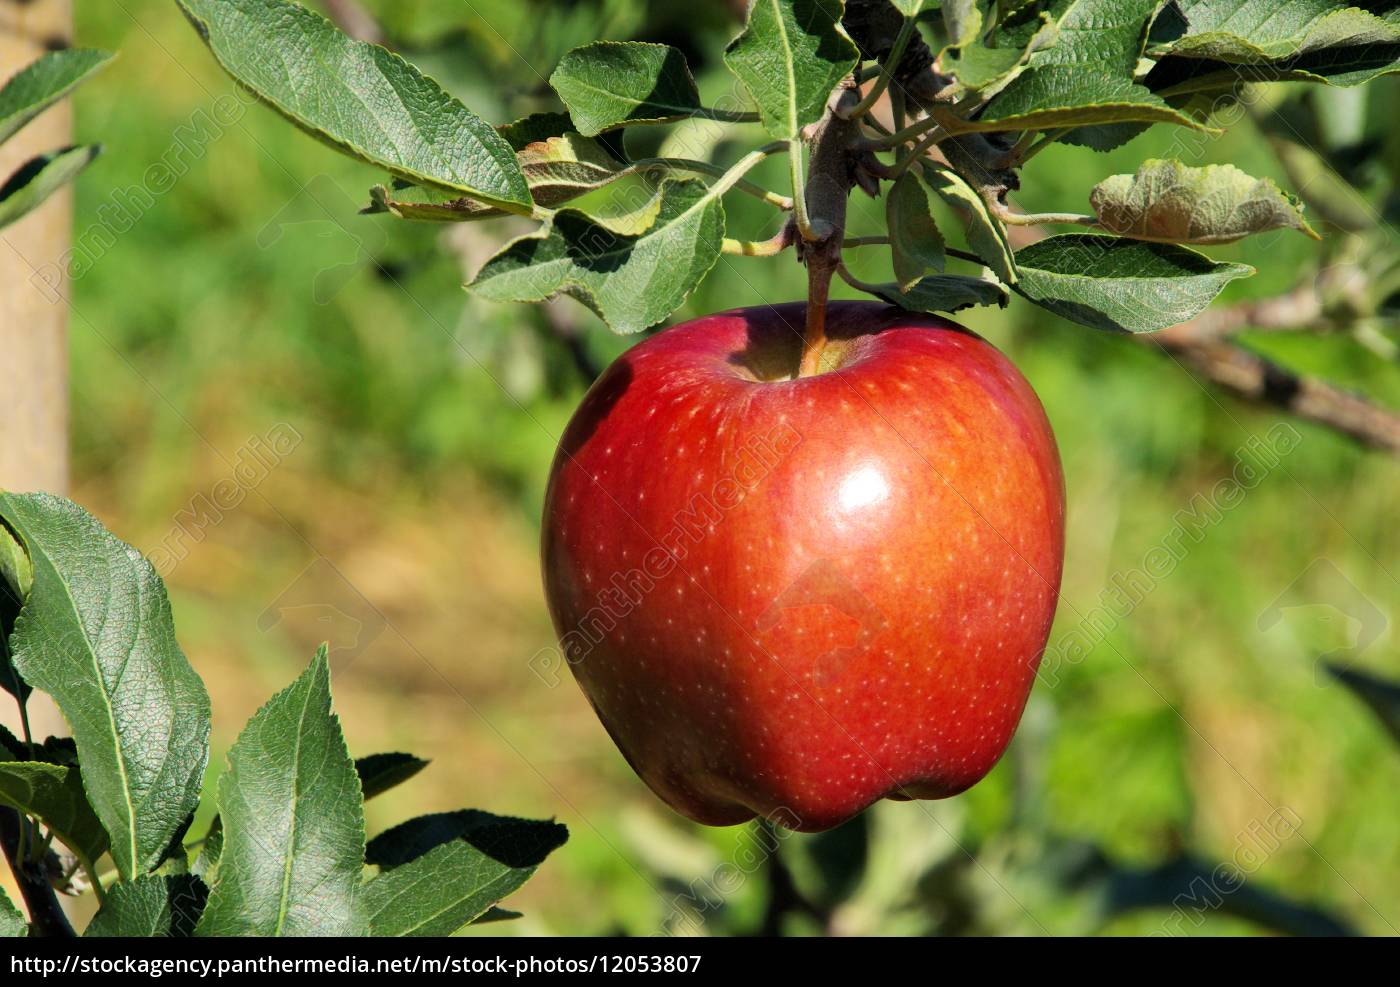 Resultado de imagen para manzana en un arbol